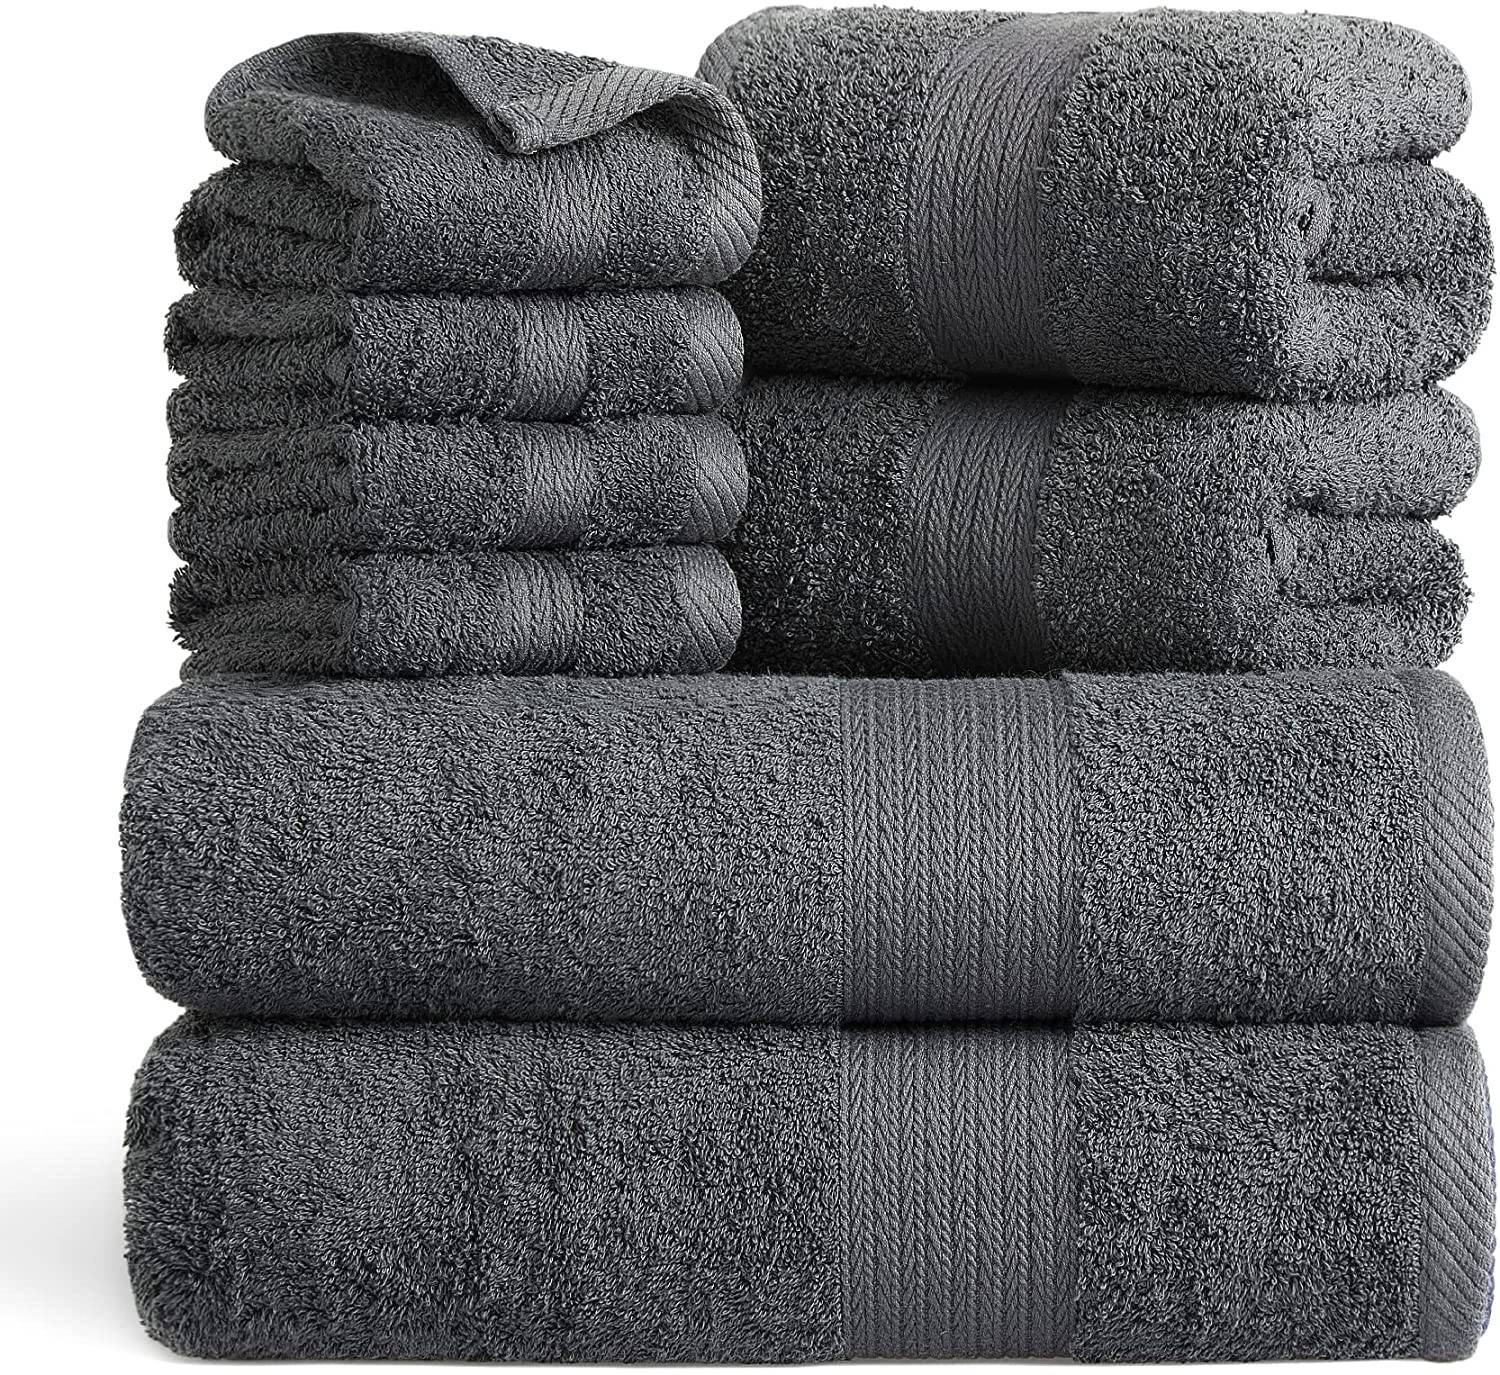 Bedsure Bath Towels Sets